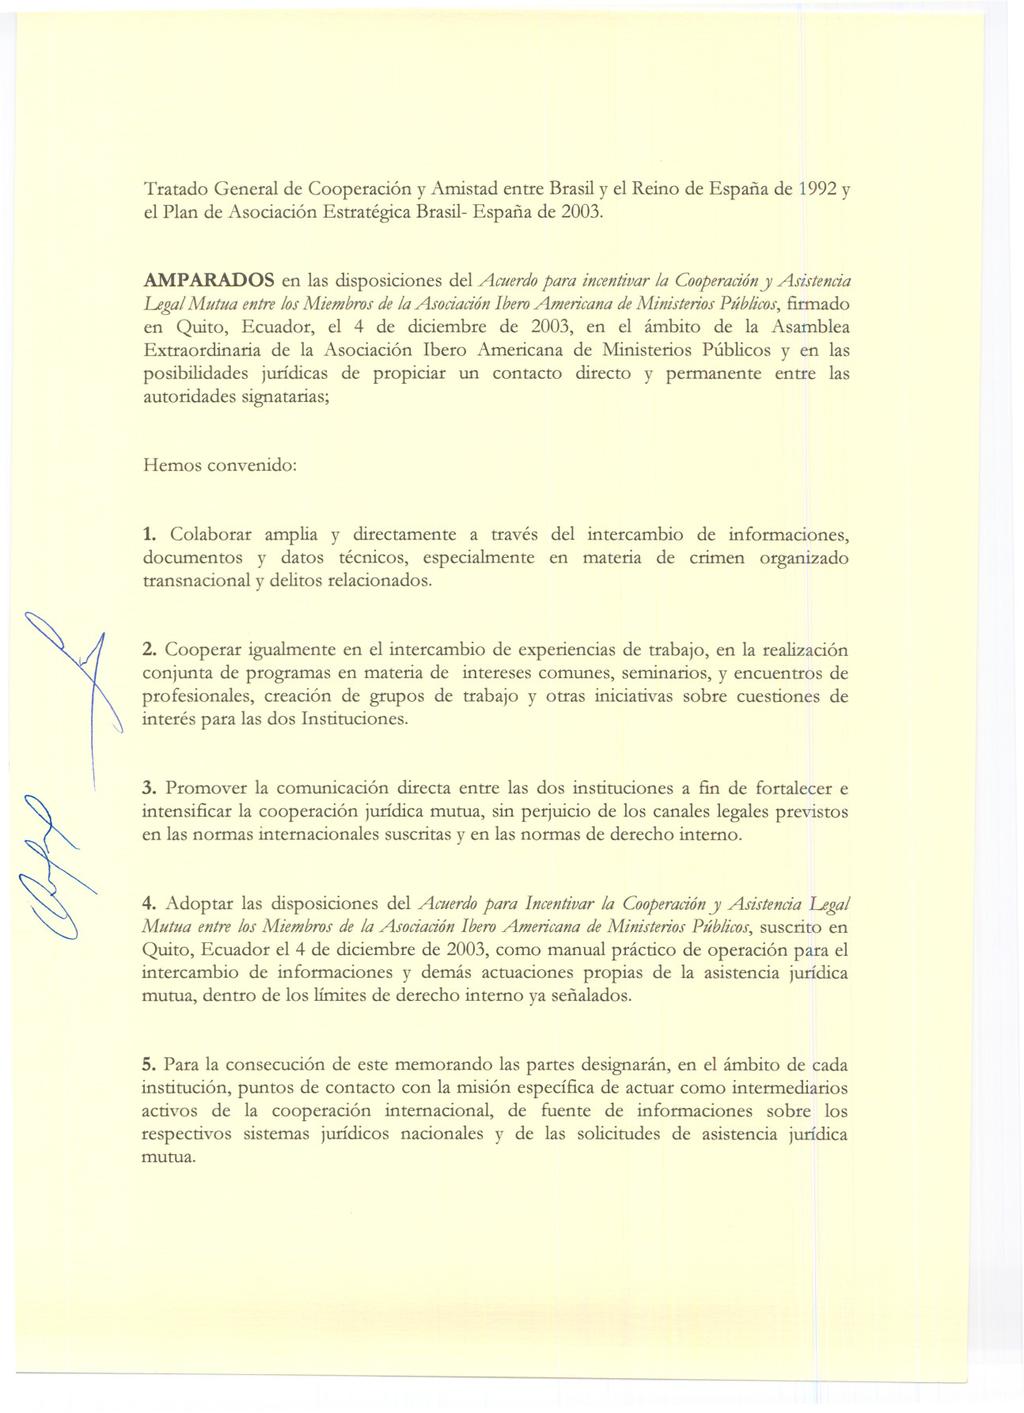 Tratado General de Cooperación y Amistad entre Brasil y el Reino de España de 1992y el Plan de Asociación Estratégica Brasil- España de 2003.